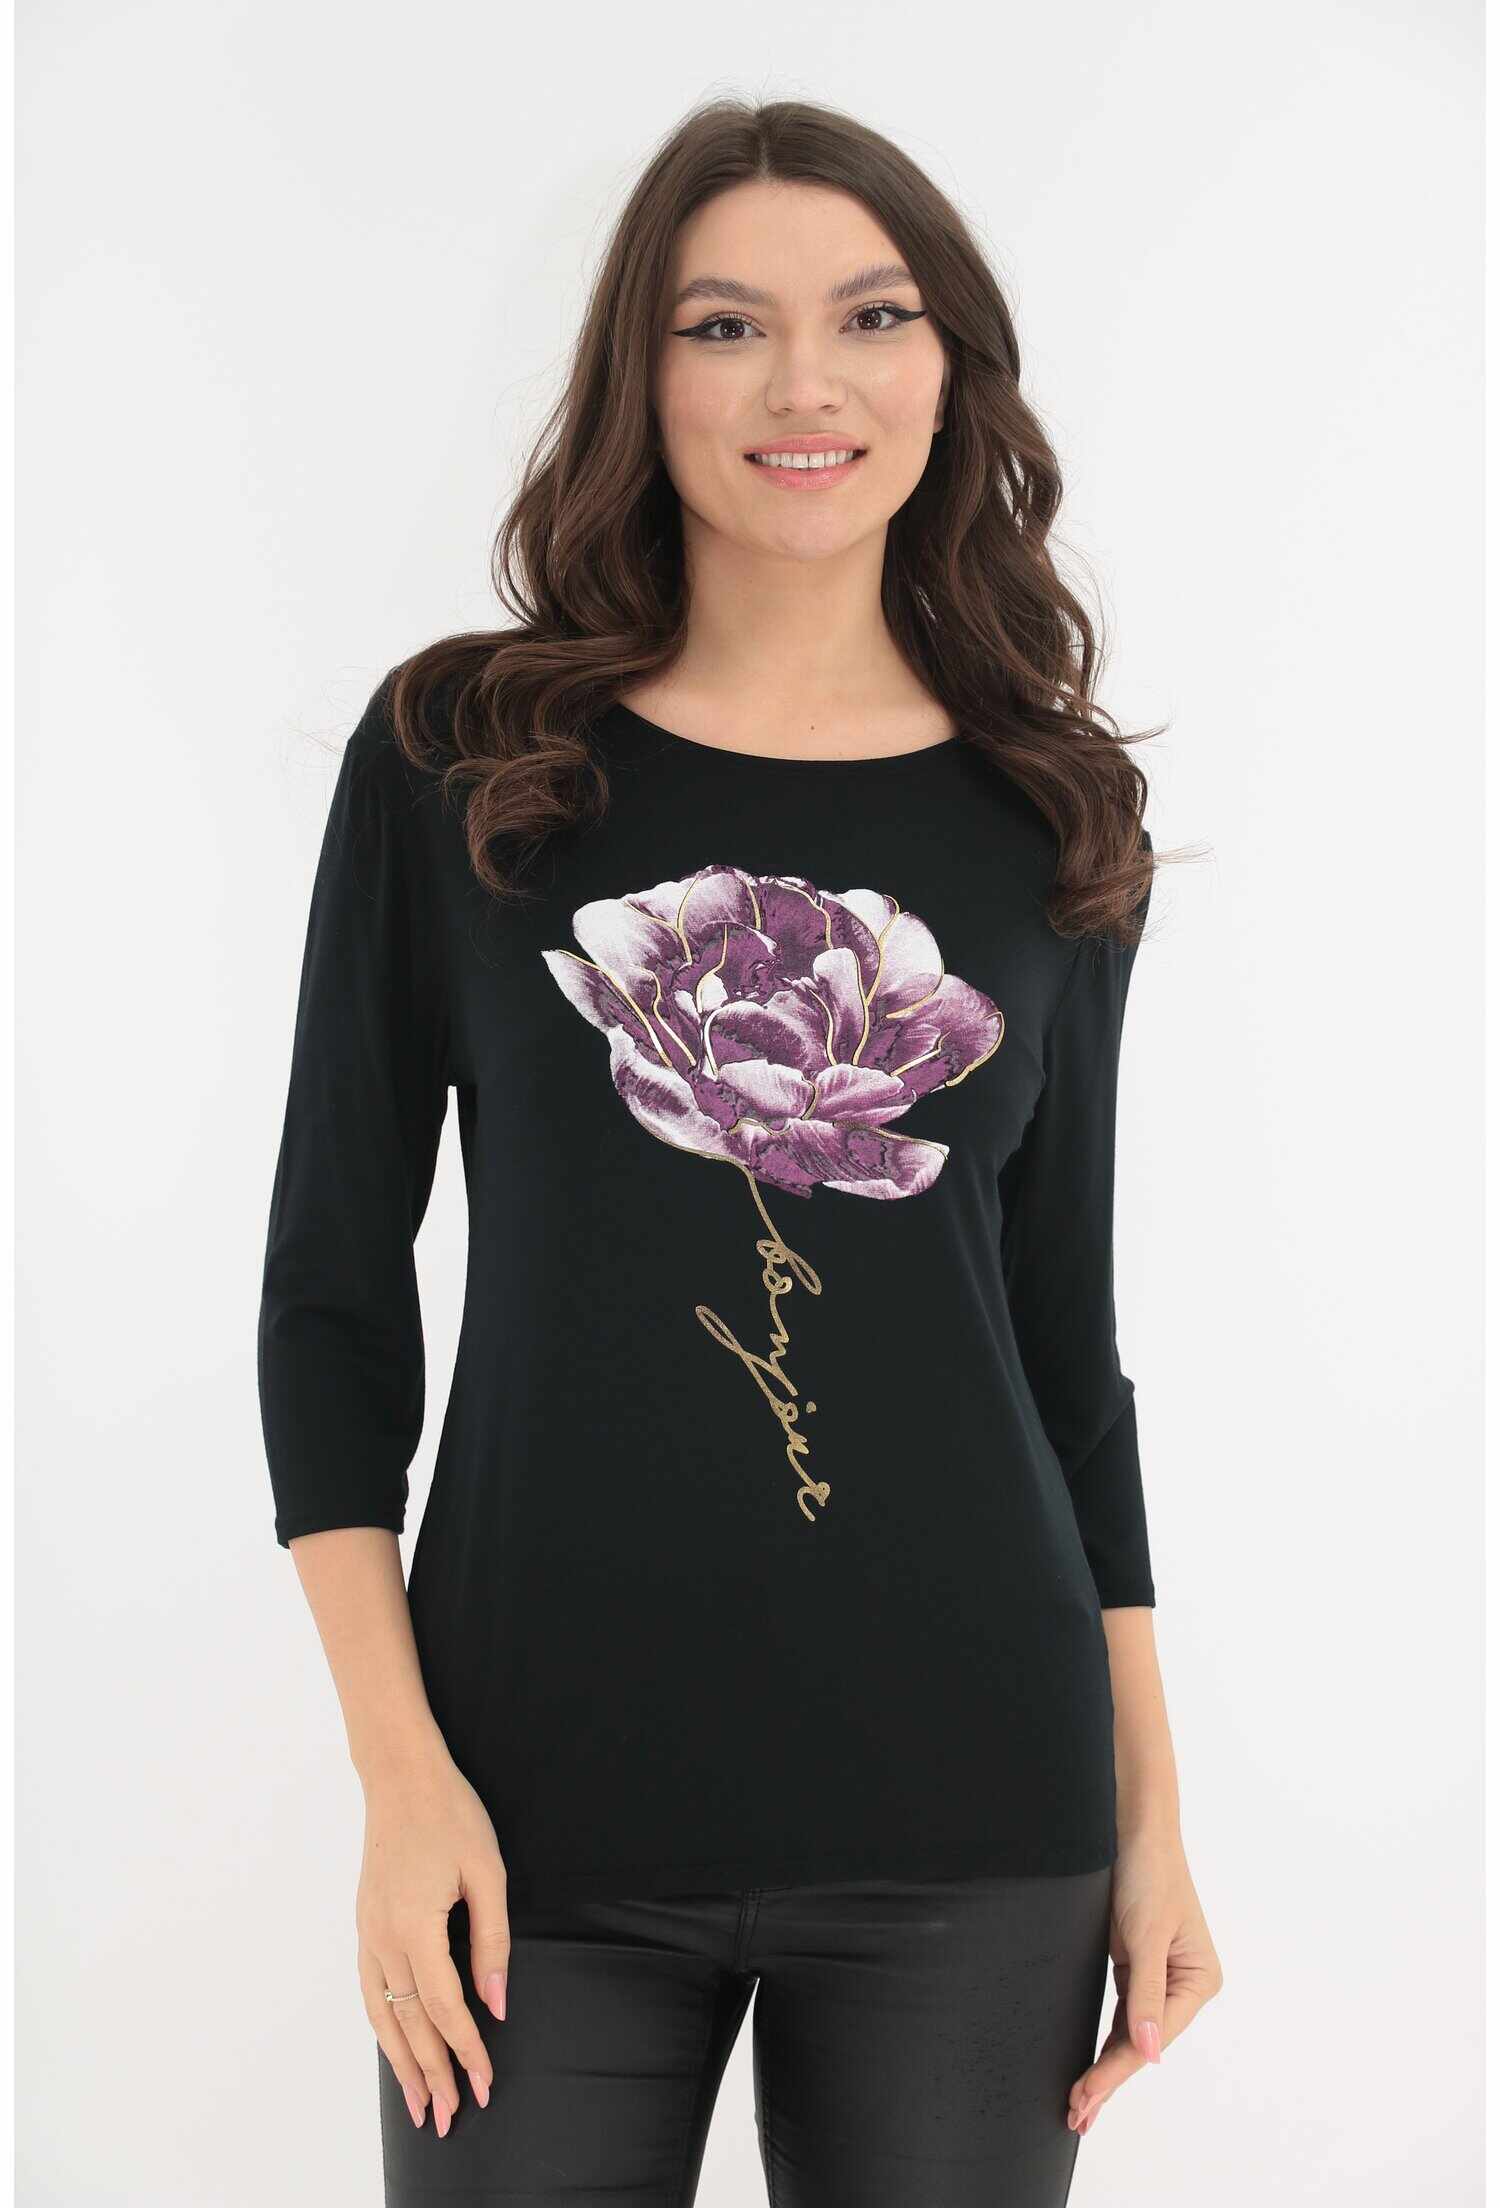 Bluza neagra cu imprimeu floral maxi lila si insertii aurii